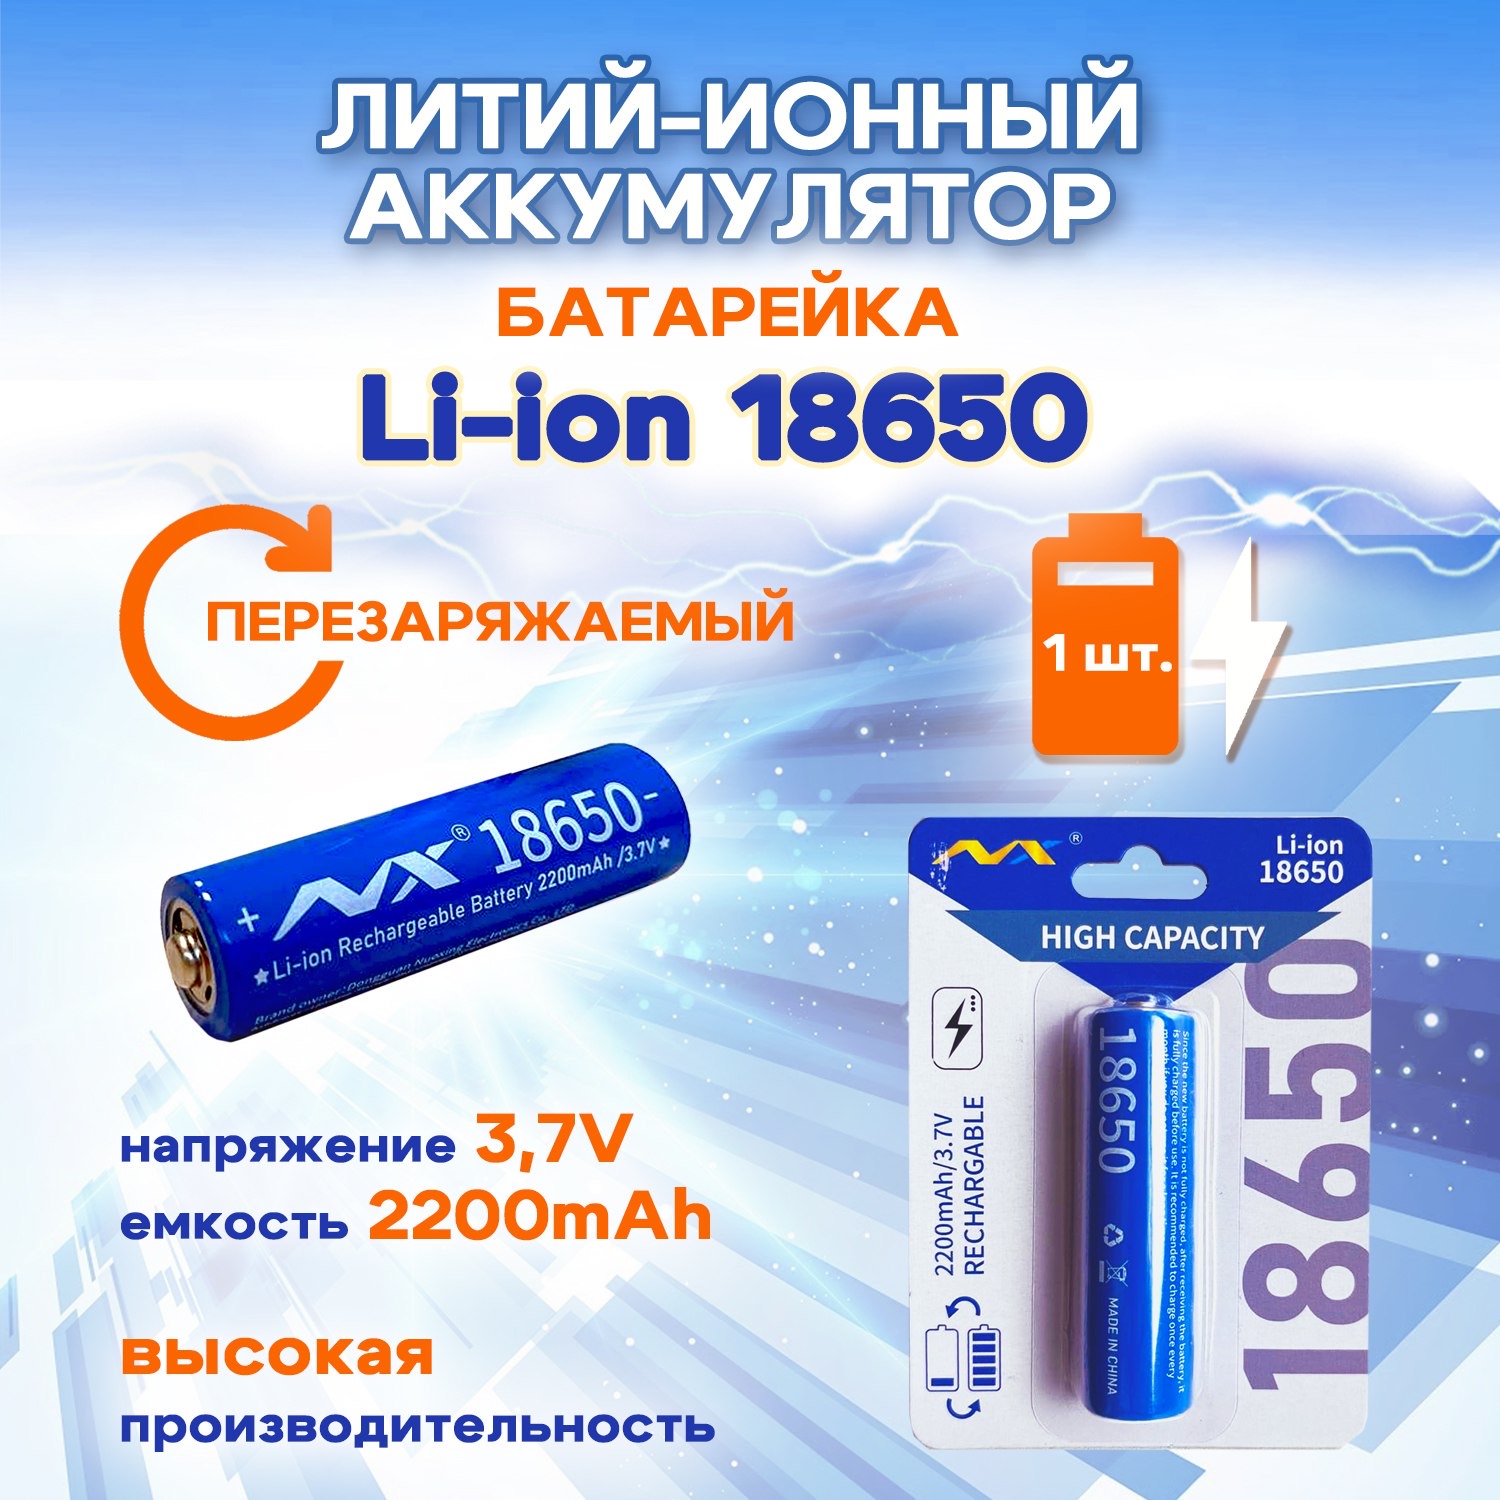 Батарейка-аккумулятор SUPER ENERGY 18650 3,7 В литий-ионный перезаряжаемый 2200 mAh, 1 шт